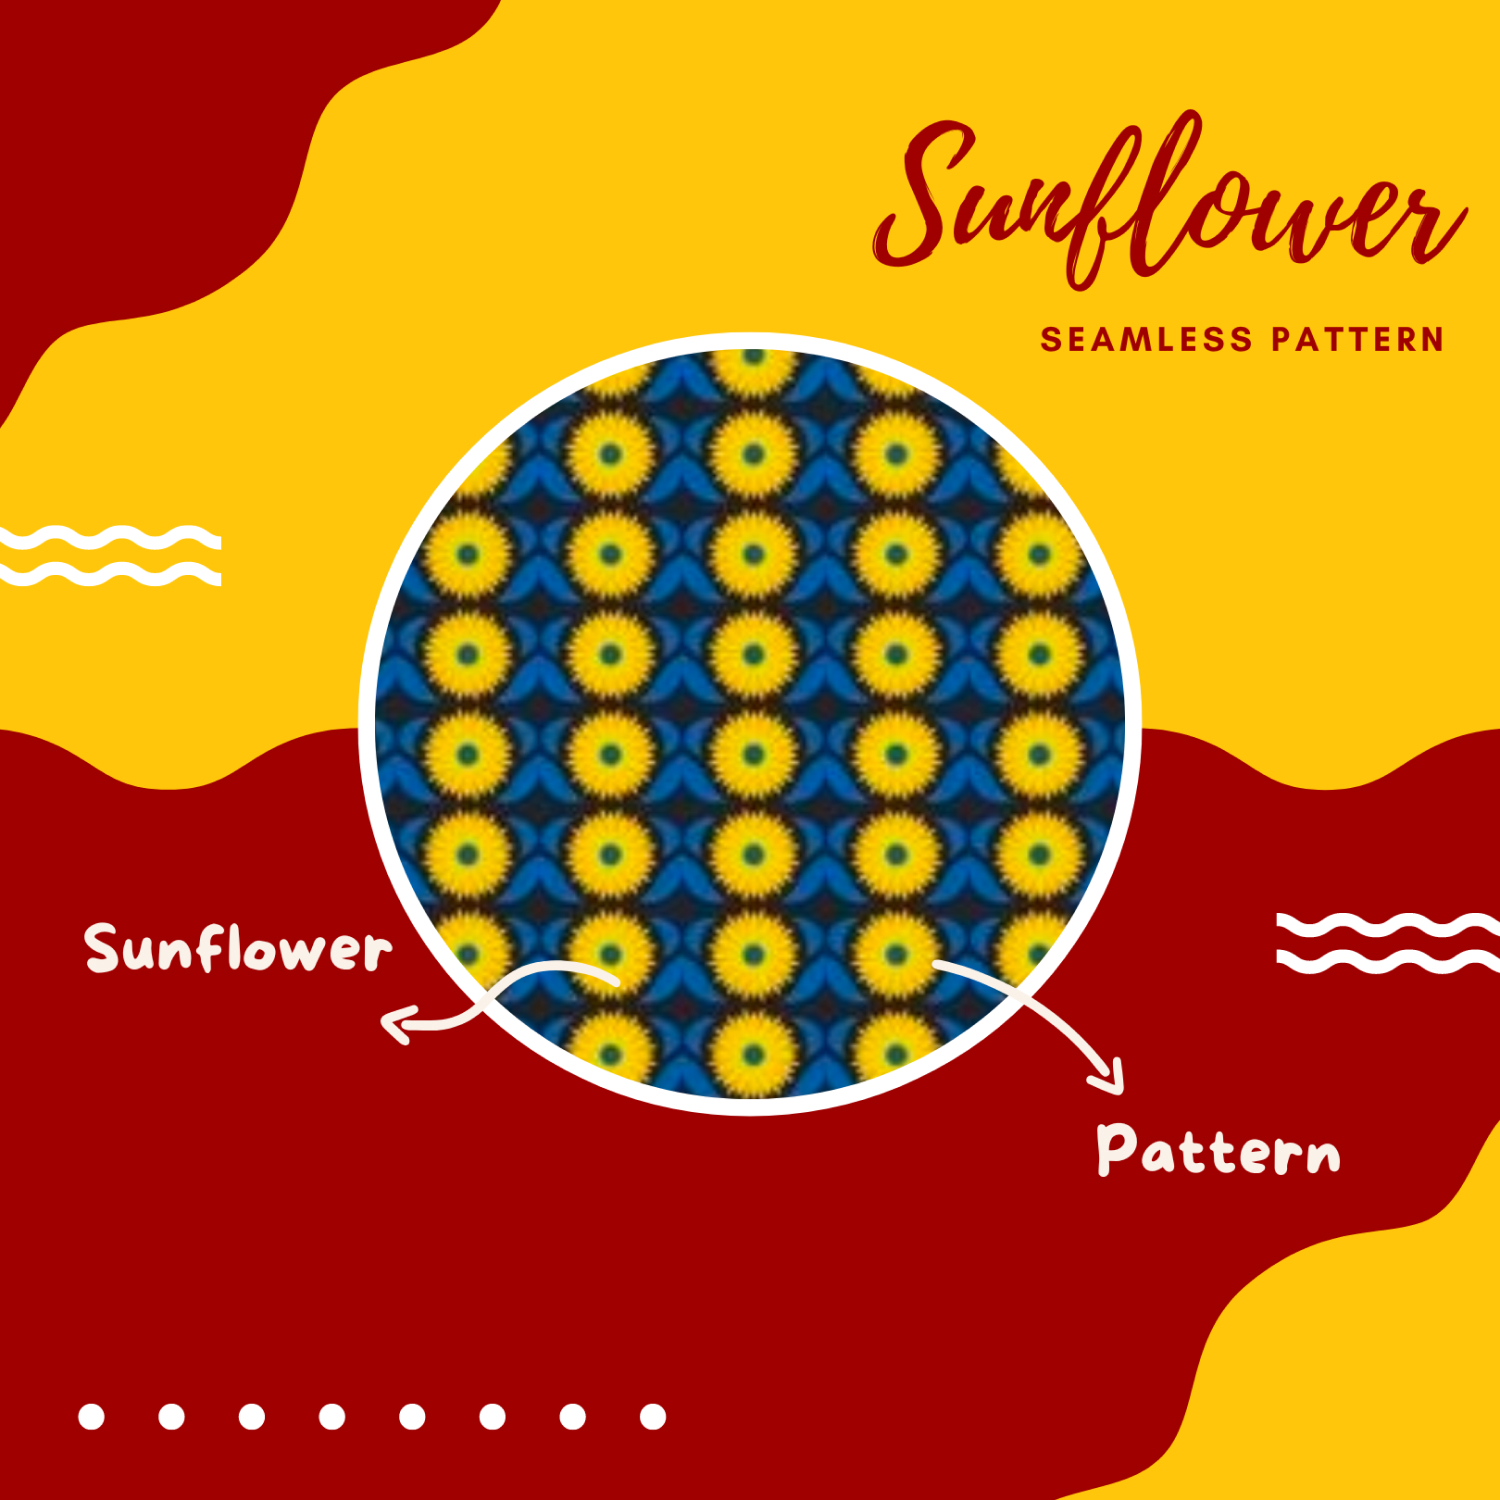 Sunflower Seamless Pattern,Sunflower KDP.